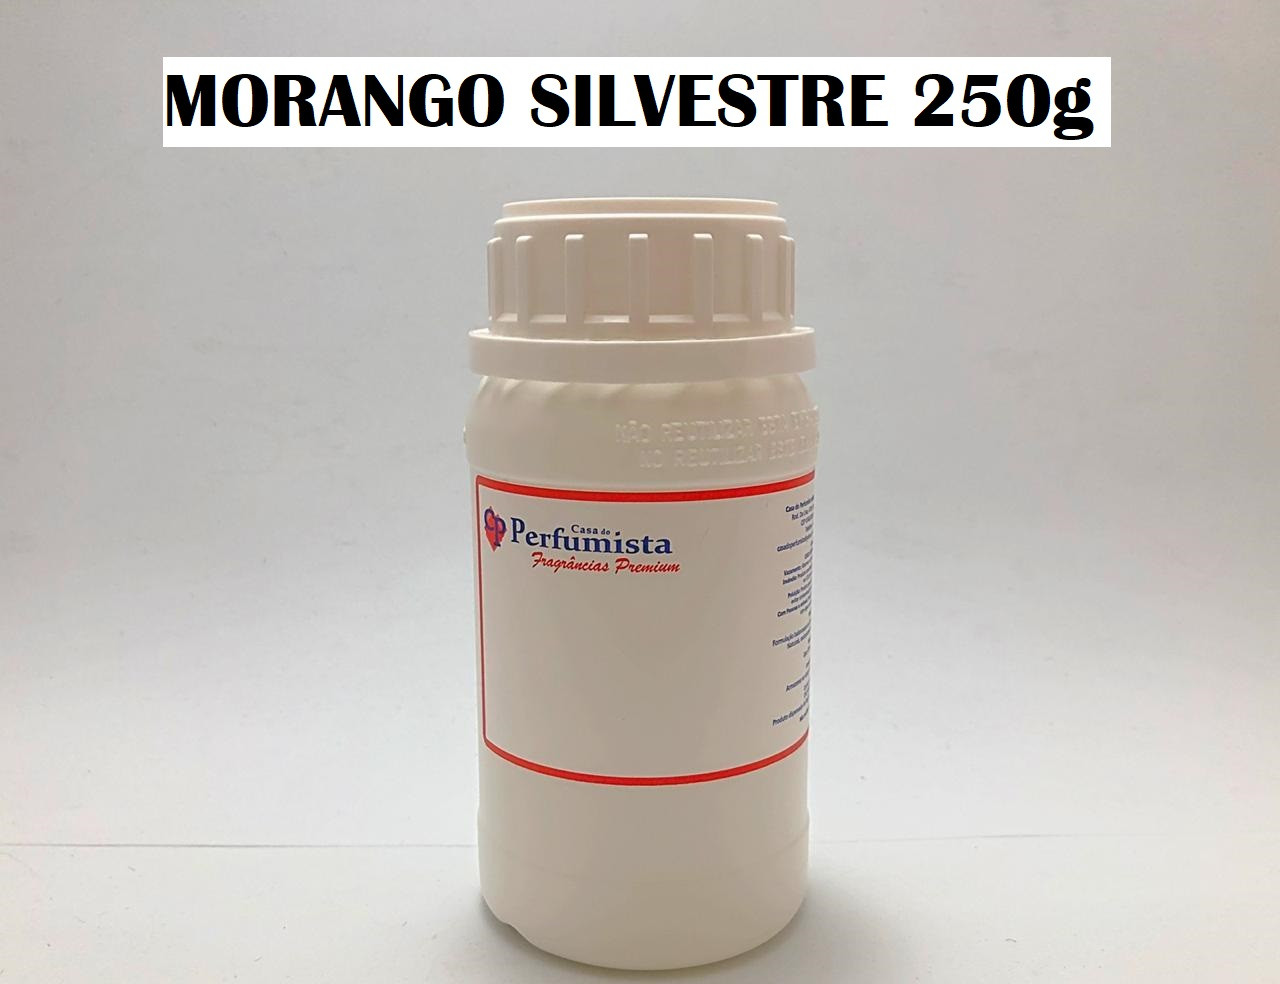 MORANGO SILVESTRE - 250g